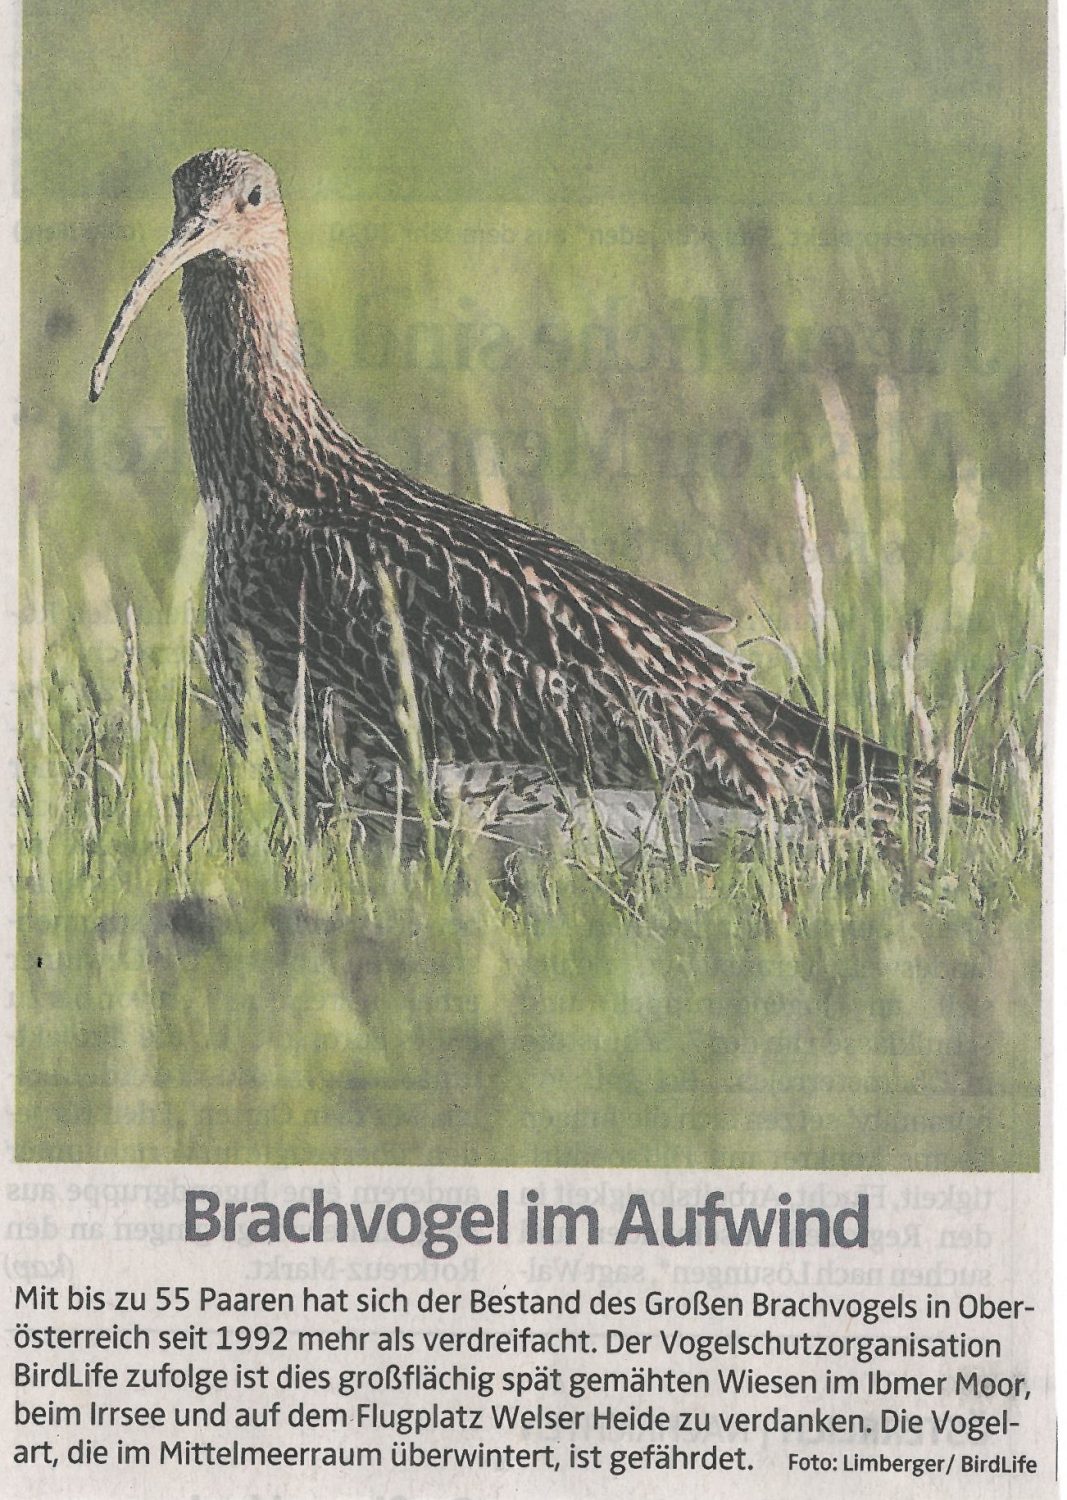 Mit bis zu 55 Paaren hat sich der bestand des Großen Brachvogels in OÖ seit 1992 mehr als verdreifacht.